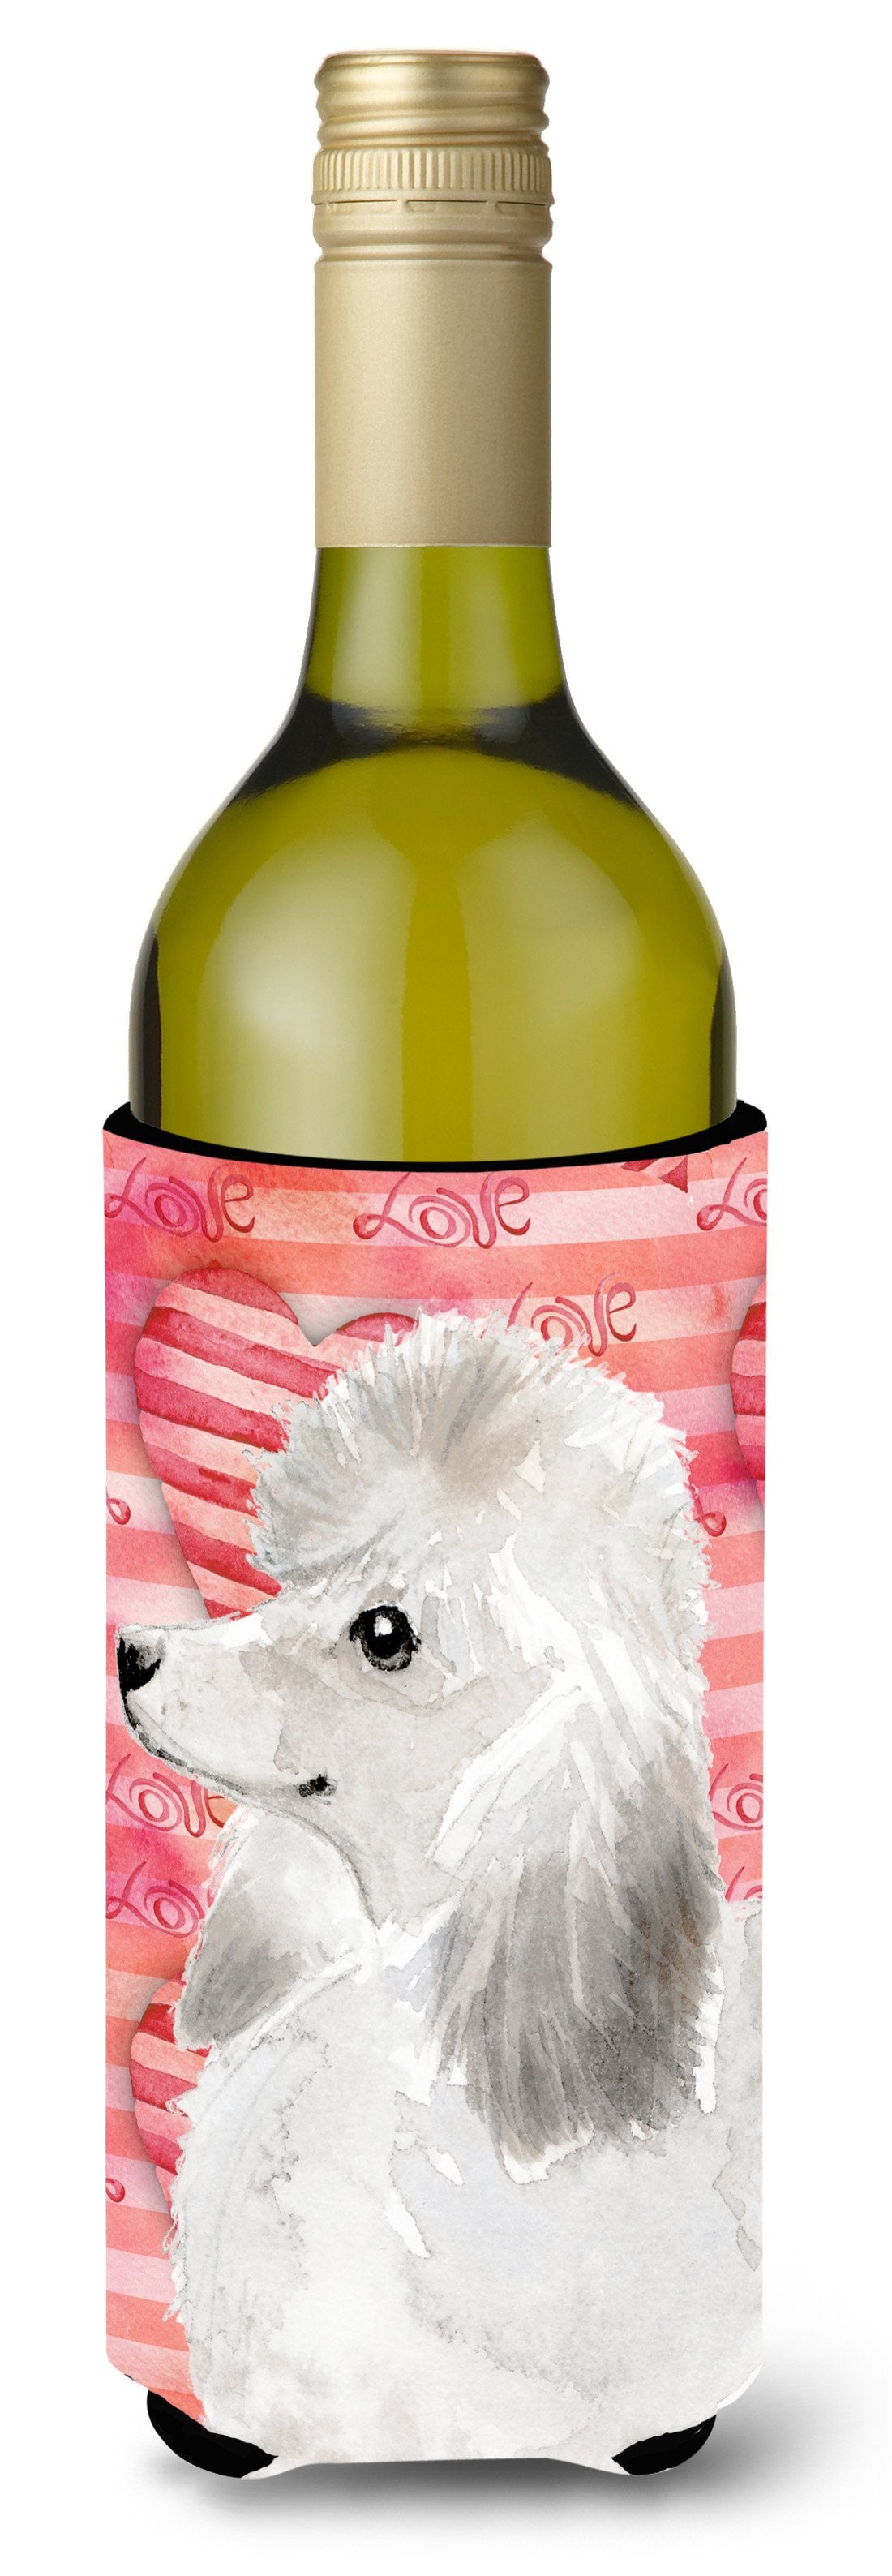 White Standard Poodle Love Wine Bottle Beverge Insulator Hugger BB9491LITERK by Caroline's Treasures